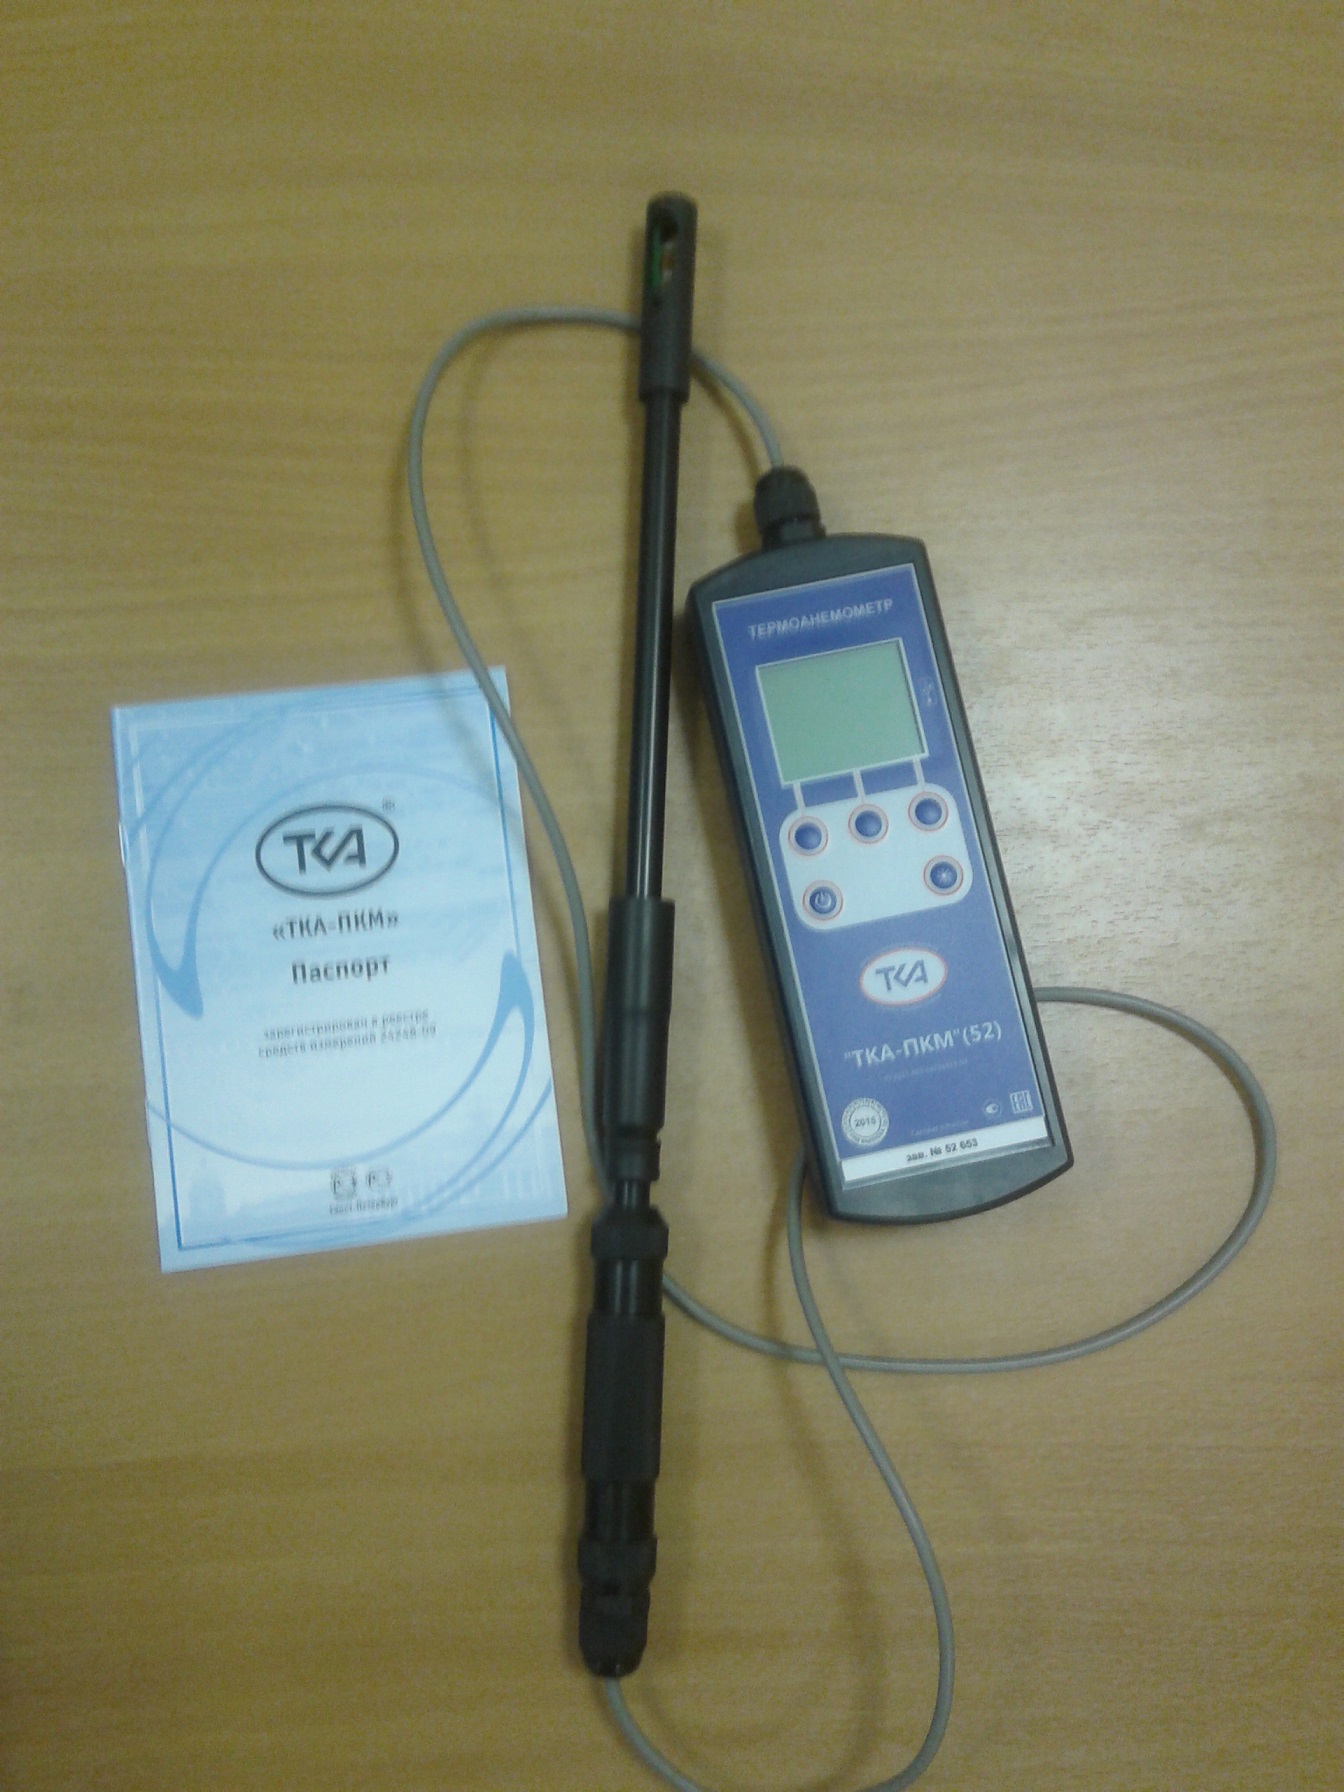 Анемометр ТКА для замера скорости воздуха в воздуховоде